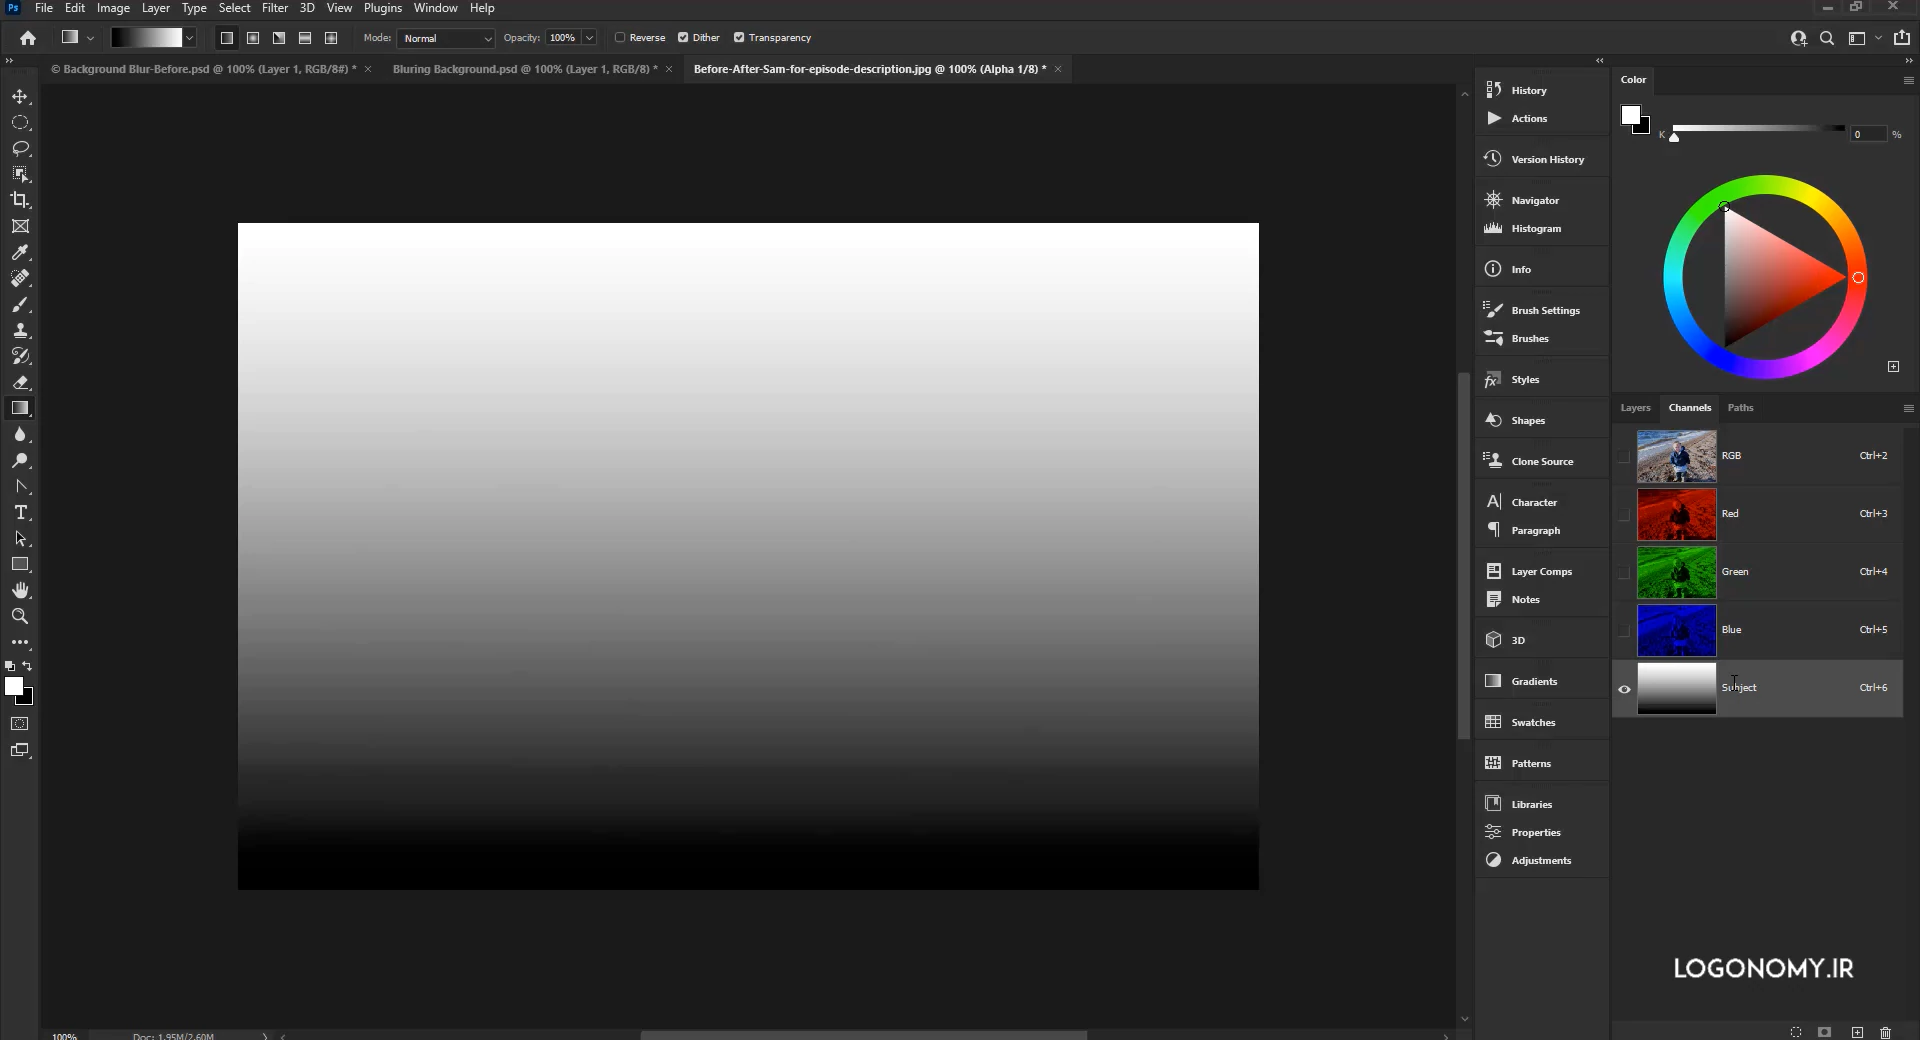 ایجاد عمق تصویر در برنامه فتوشاپ (photoshop) با فیلتر لنز بلر (Lenz blur)